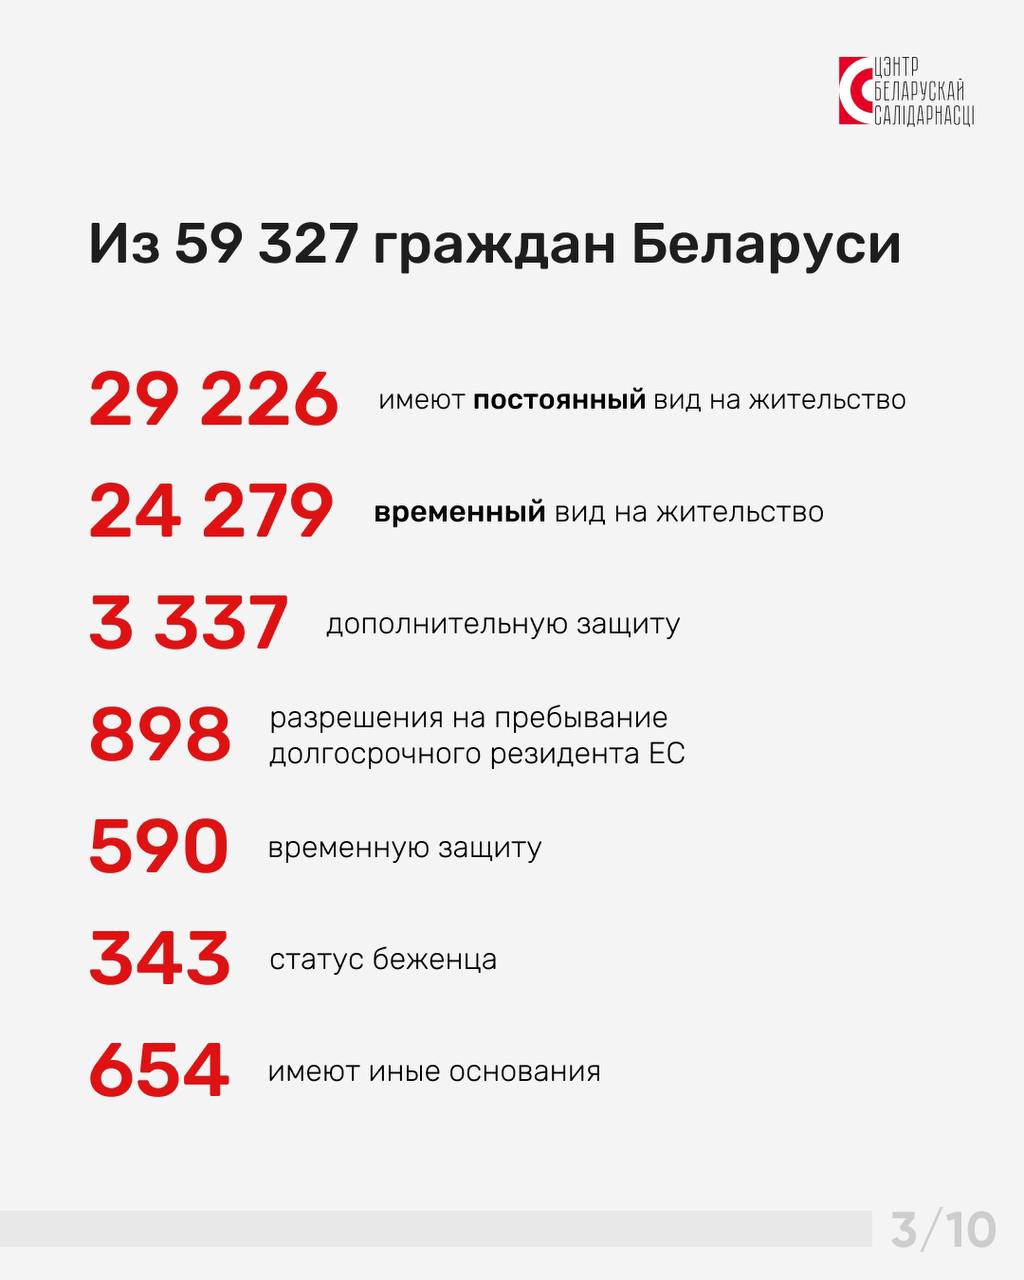 В Польше проживает почти 60 тысяч беларусов